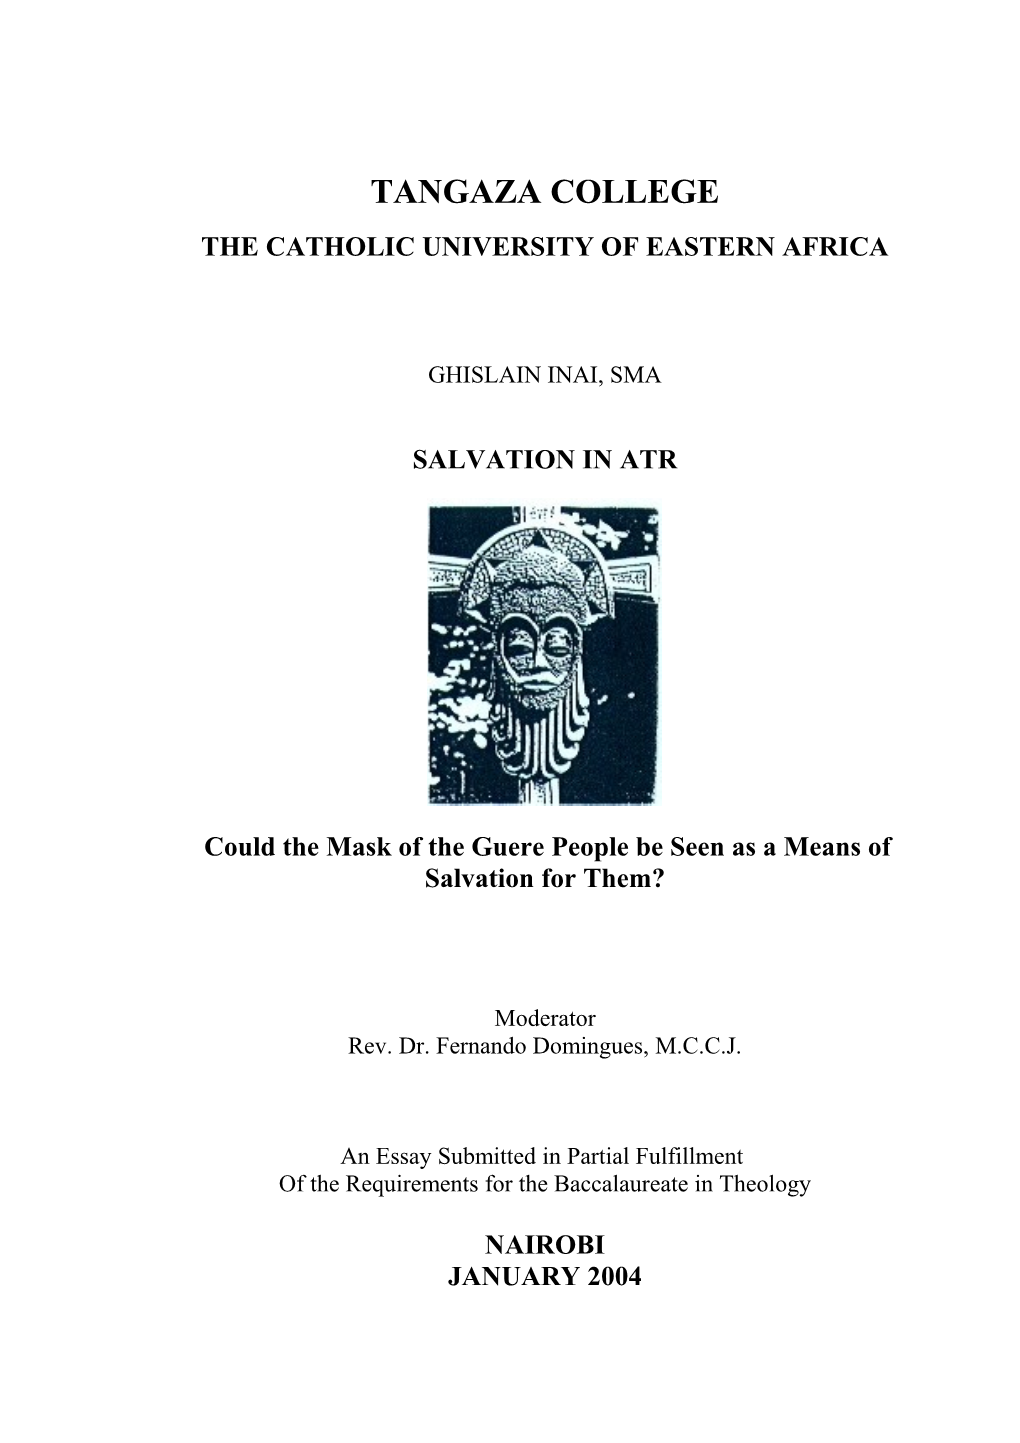 The Catholic University of Eastern Africa